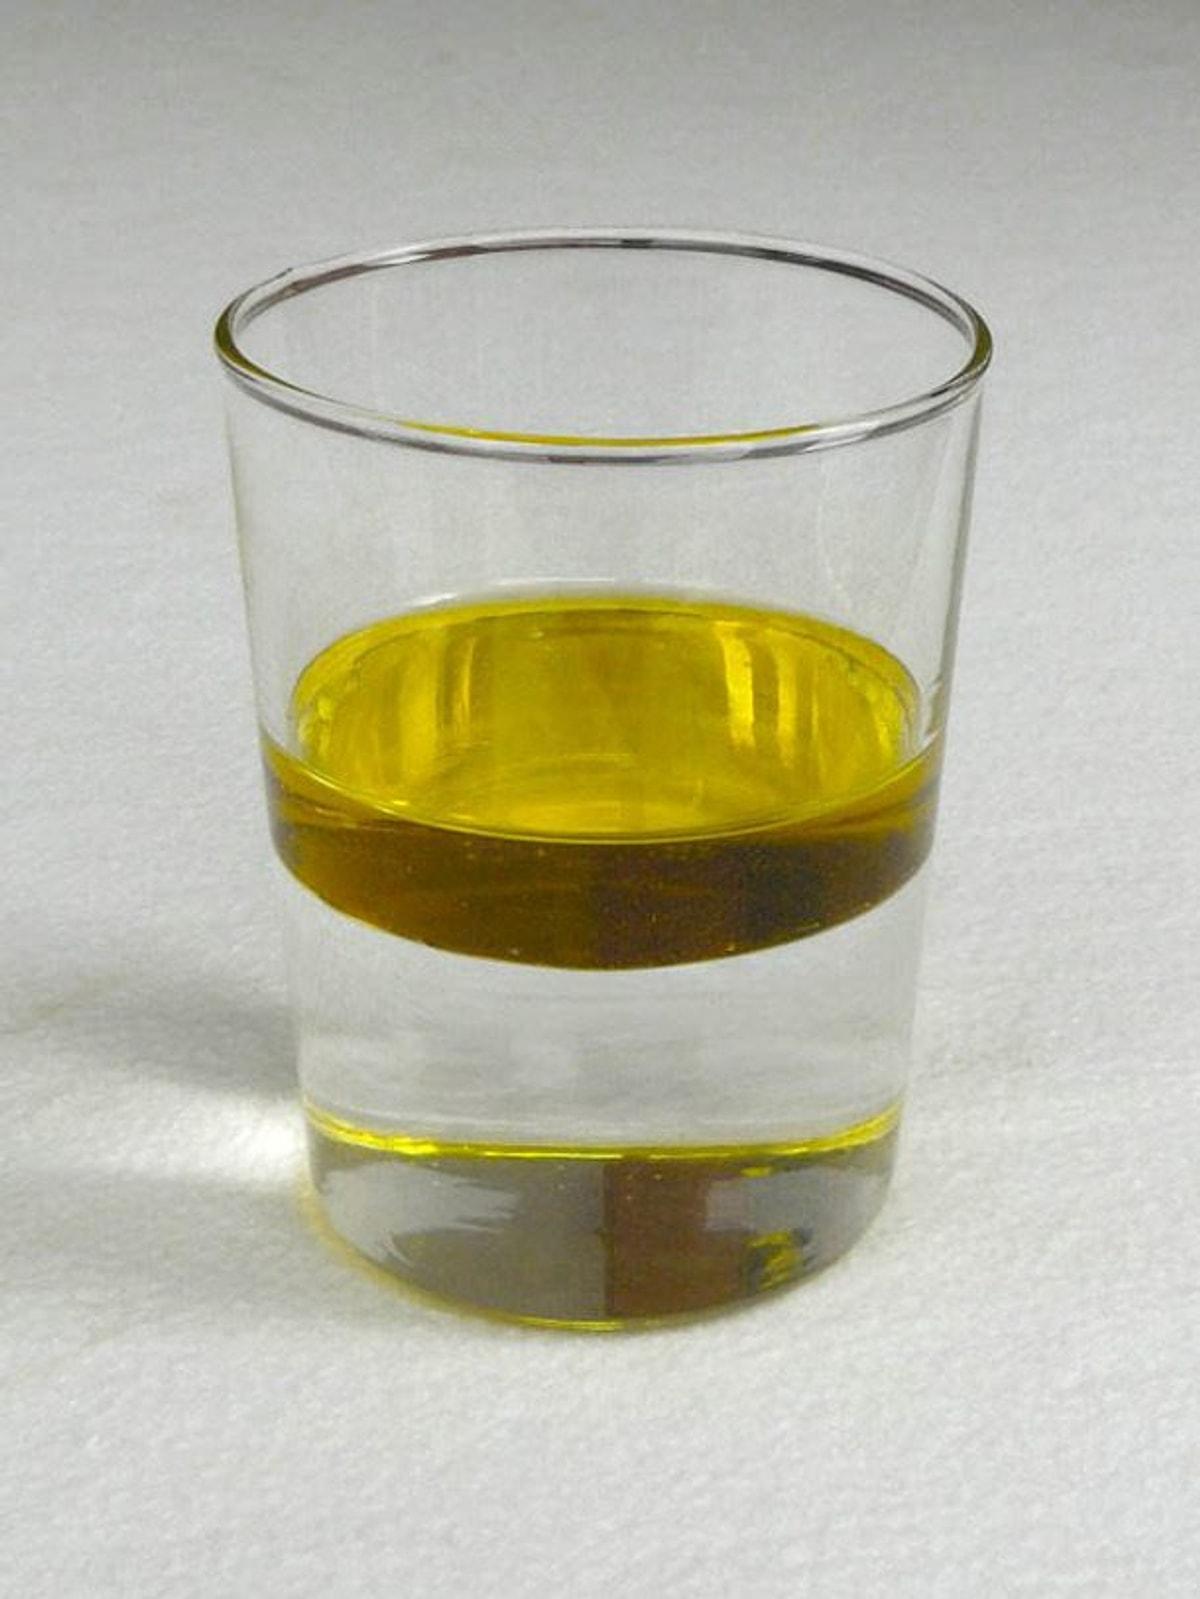 Вода масло что происходит. Растительное масло в стакане. Масло и вода в стакане. Смесь растительного масла и воды. Смешивание воды и растительного масла.